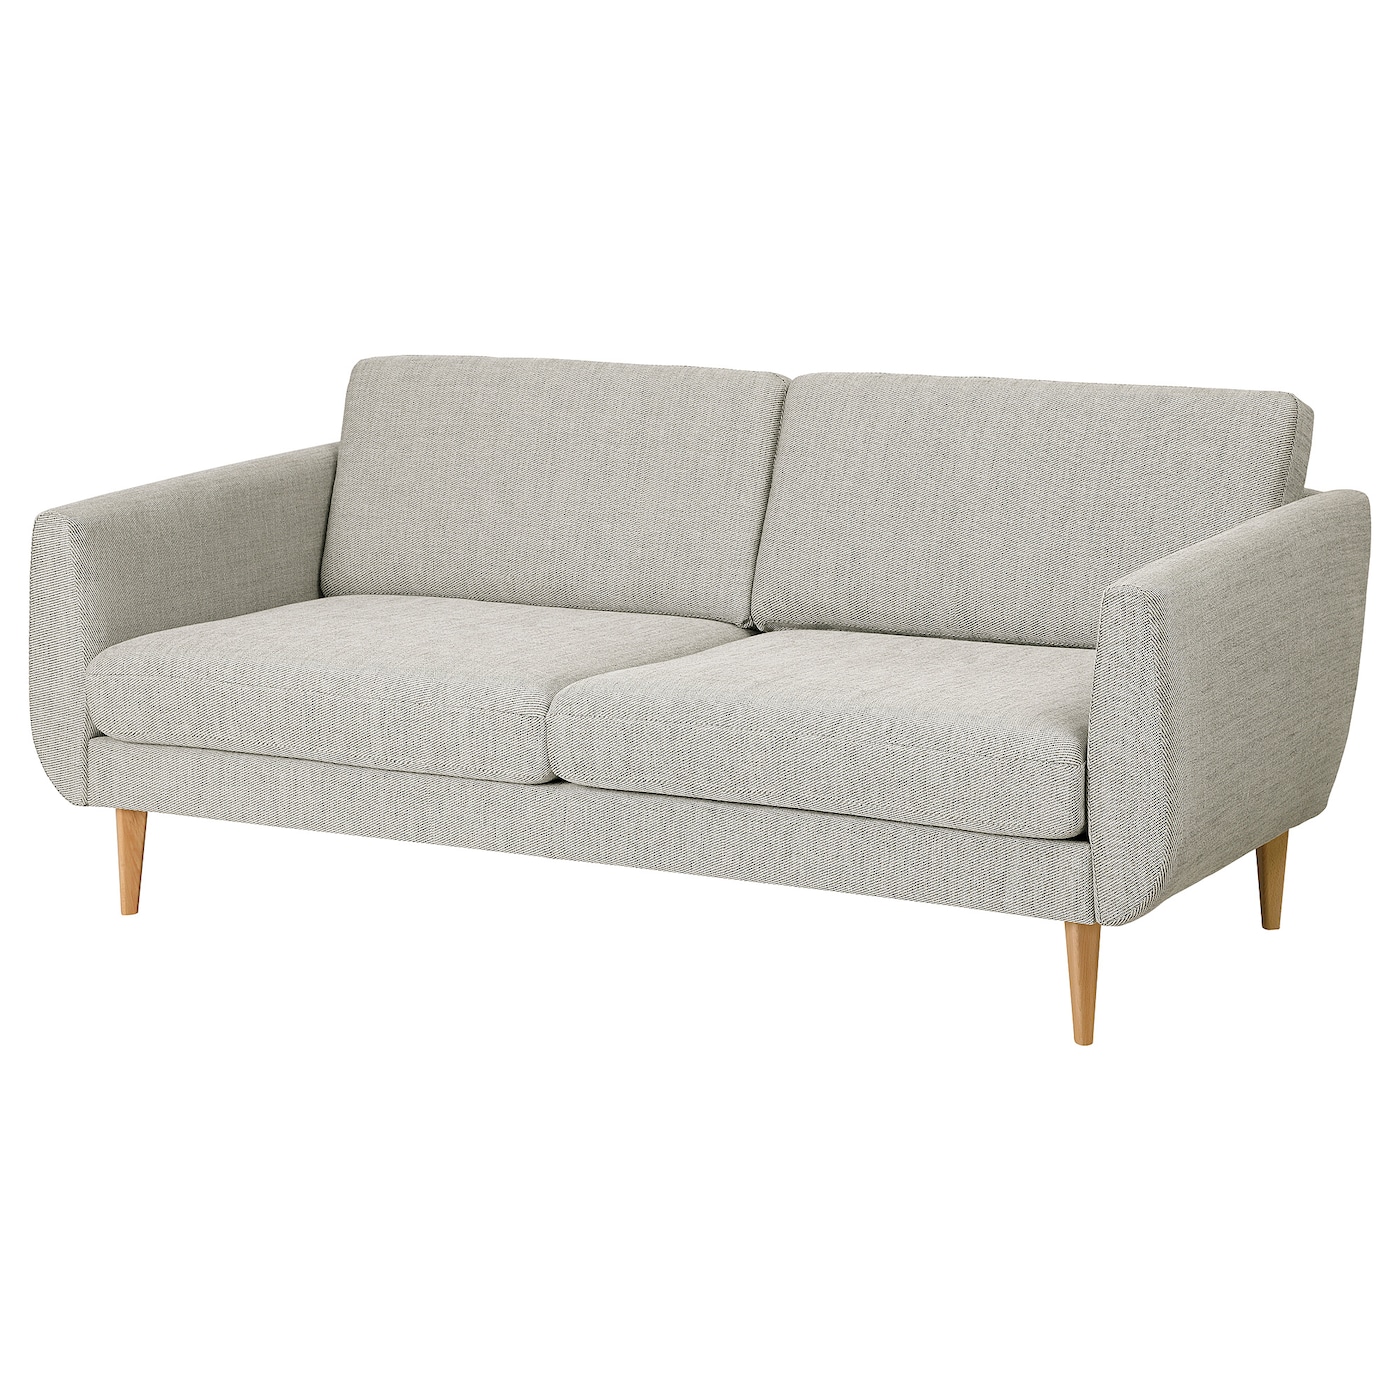 СМЕДСТОРП 3-местный диван, Виарп бежевый/коричневый/дуб SMEDSTORP IKEA диван офисный шарм дизайн бит с подушками коричневый